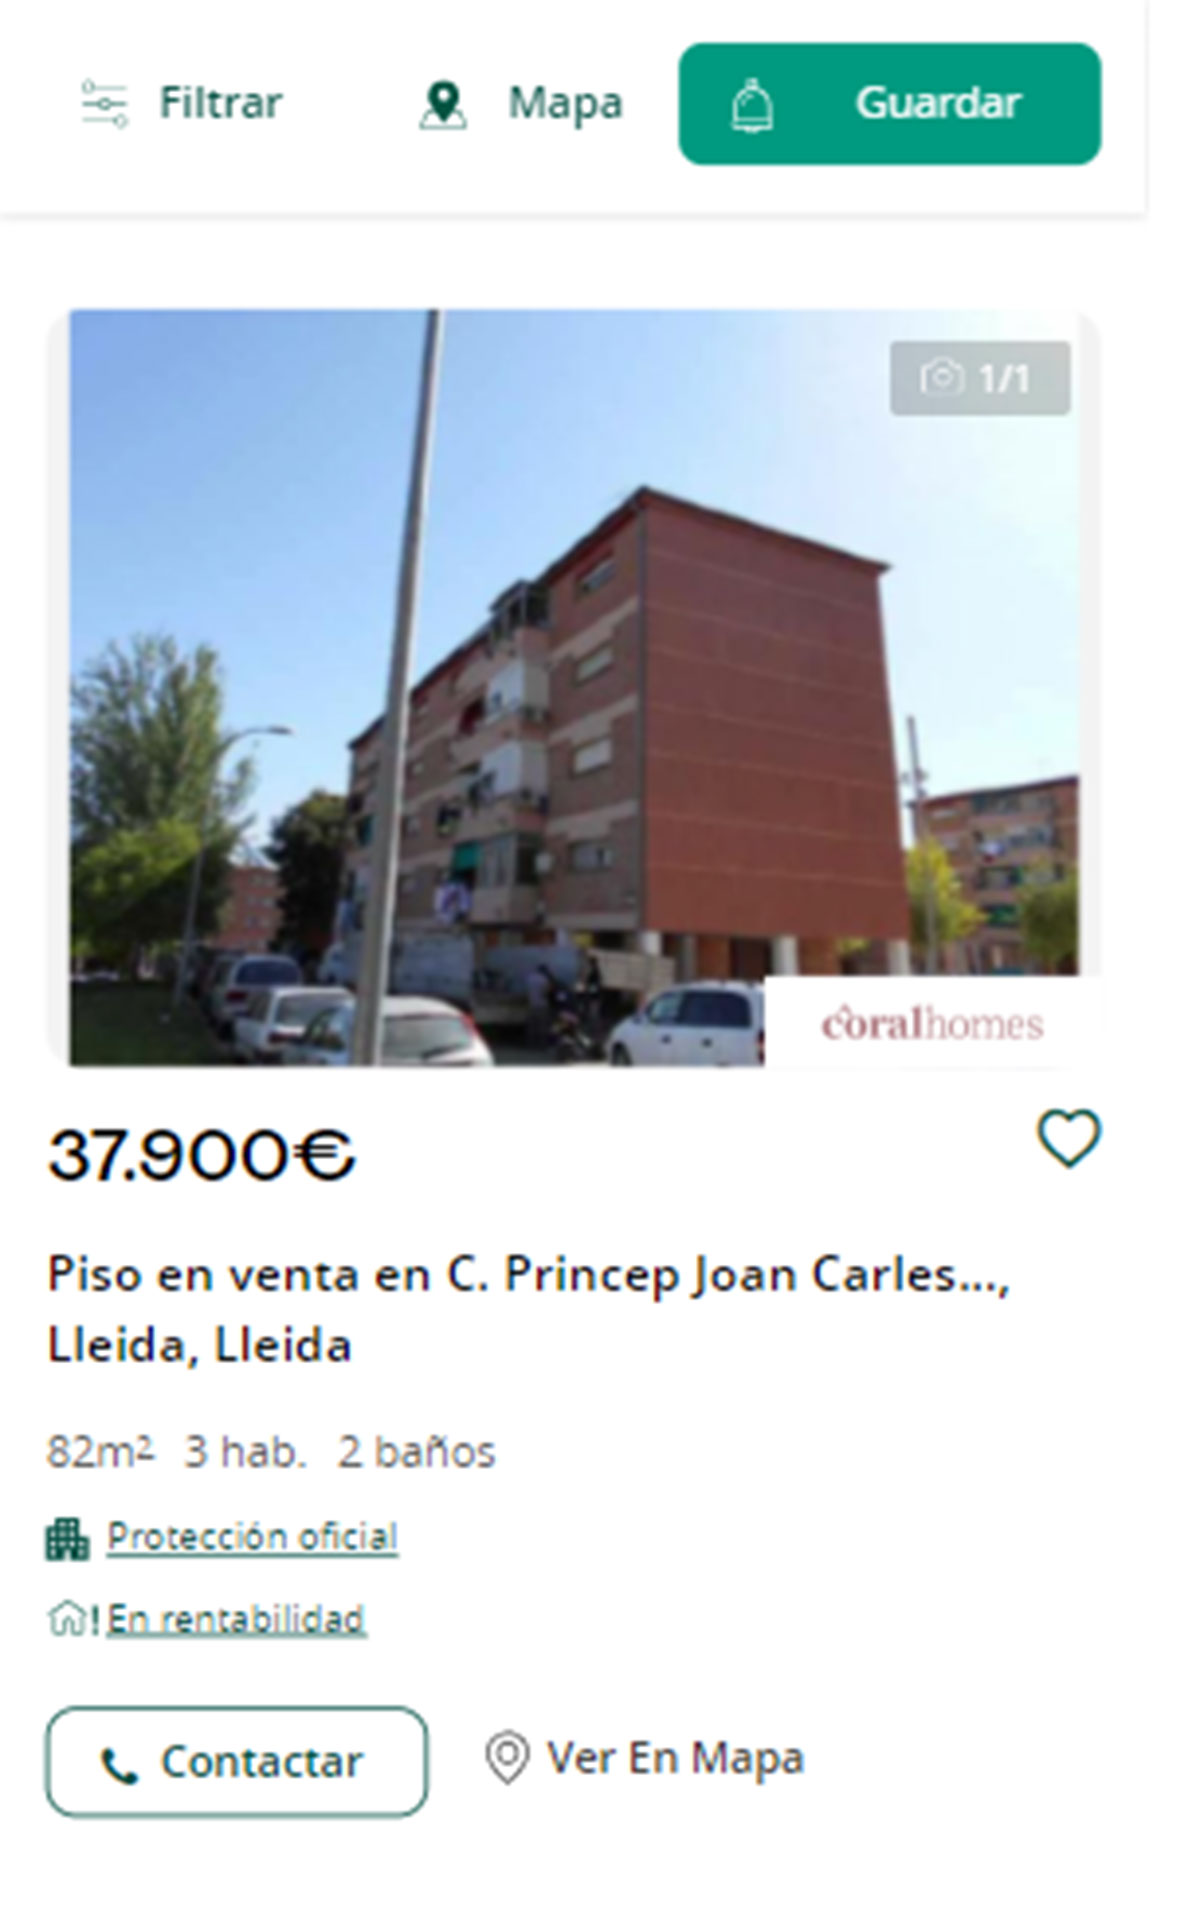 Piso en Lleida por 37.900 euros